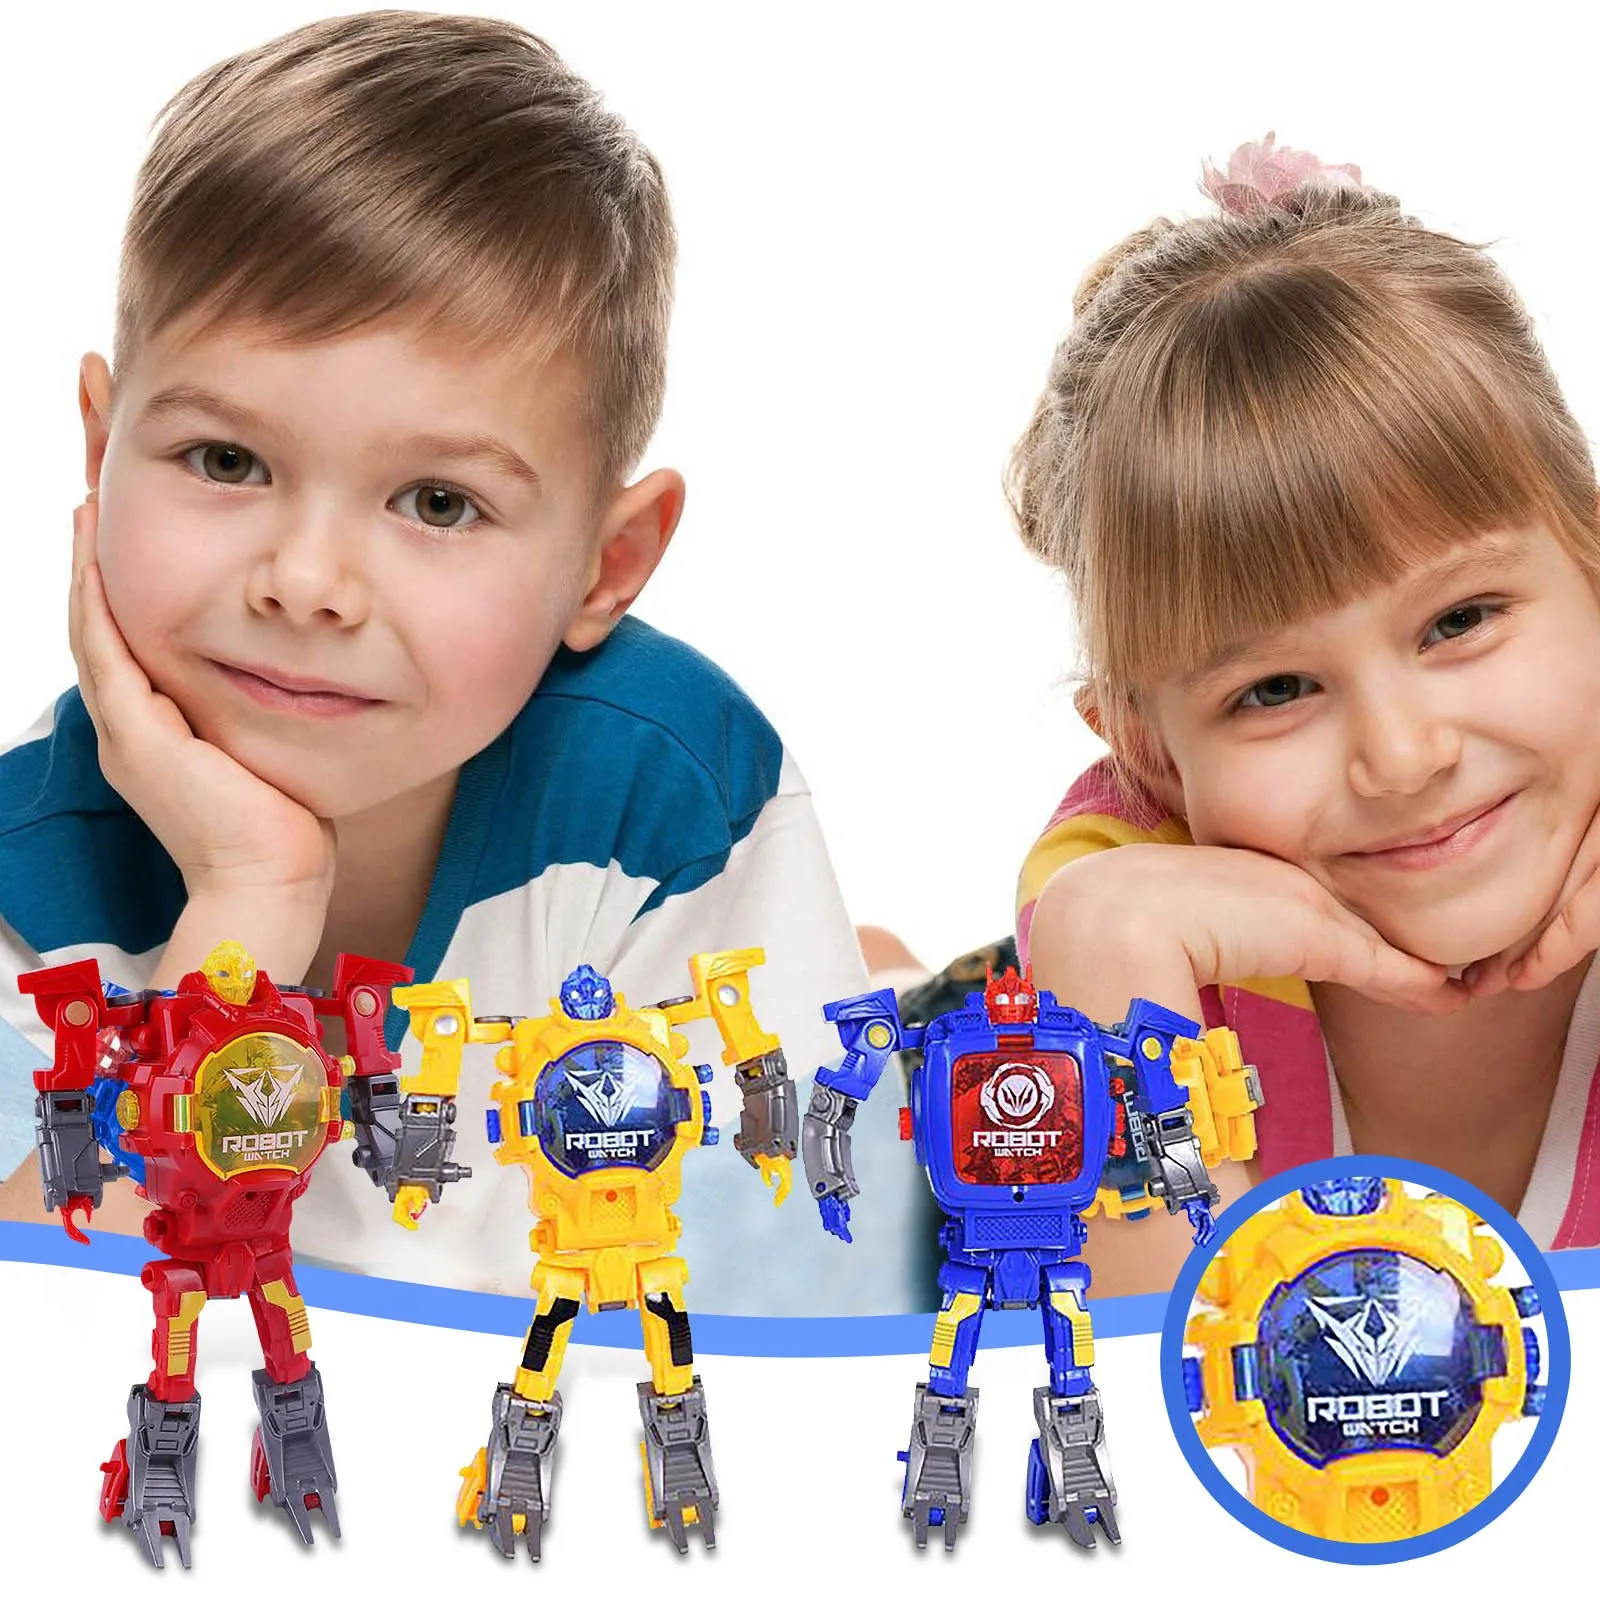 

Детские игрушки и часы «Два в одном», Электронный Робот-трансформер, креативная мультяшная игрушка-трансформер, новый подарок на день рожде...